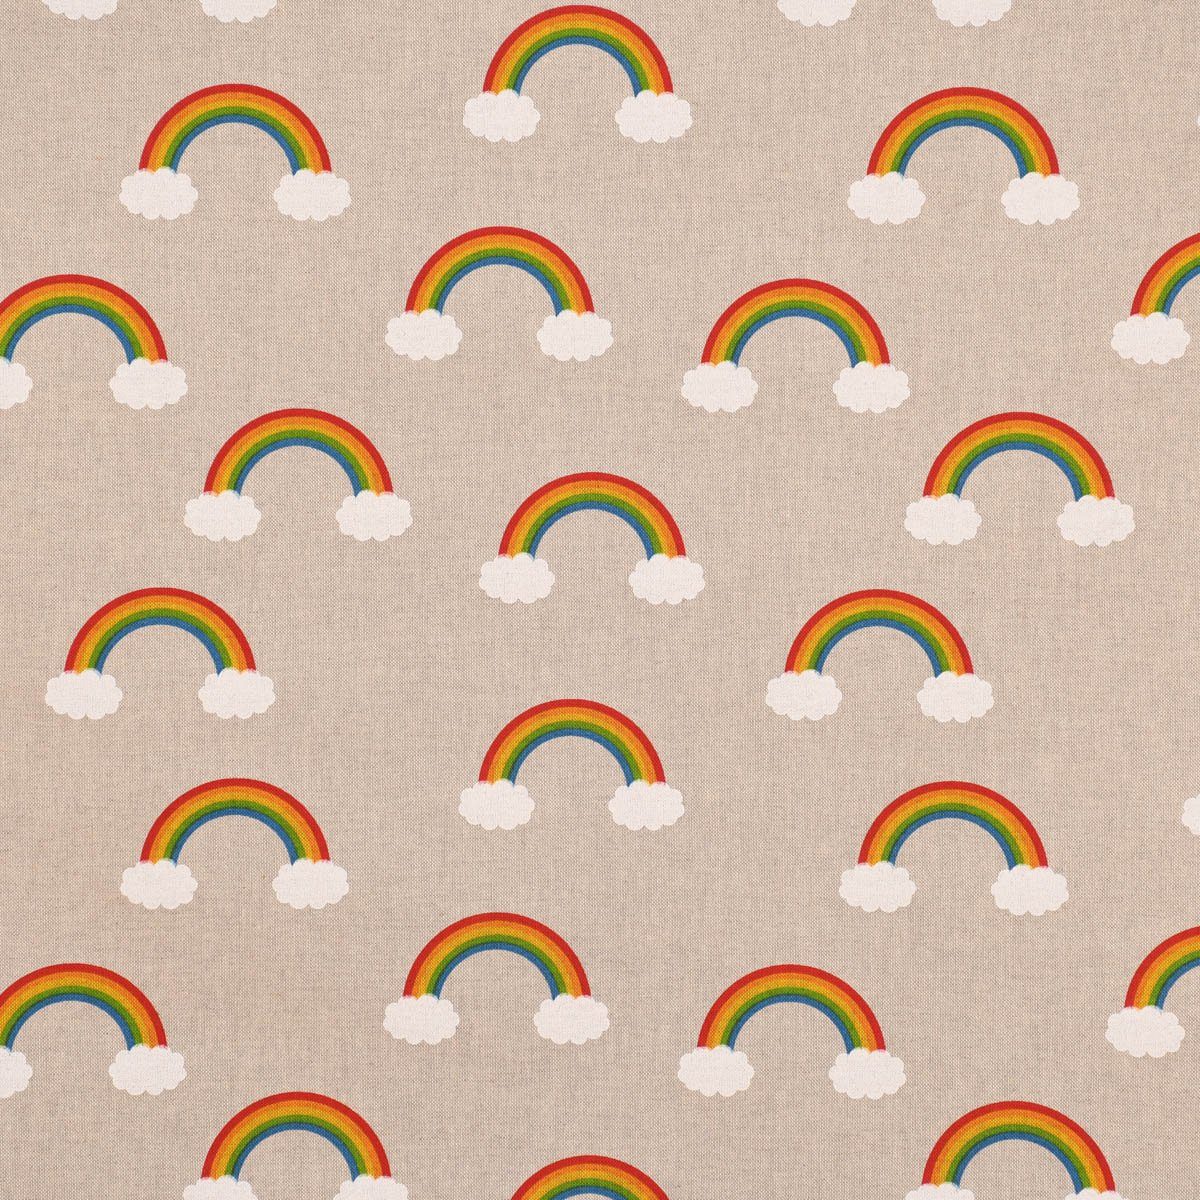 Regenbogen handmade, natur in Wolken blickdicht, Germany, SCHÖNER (1 Baumwolle, Over St), SCHÖNER Smokband Rainbow 2, the made Vorhang Vorhang LEBEN. vorgewaschen bunt LEBEN.,